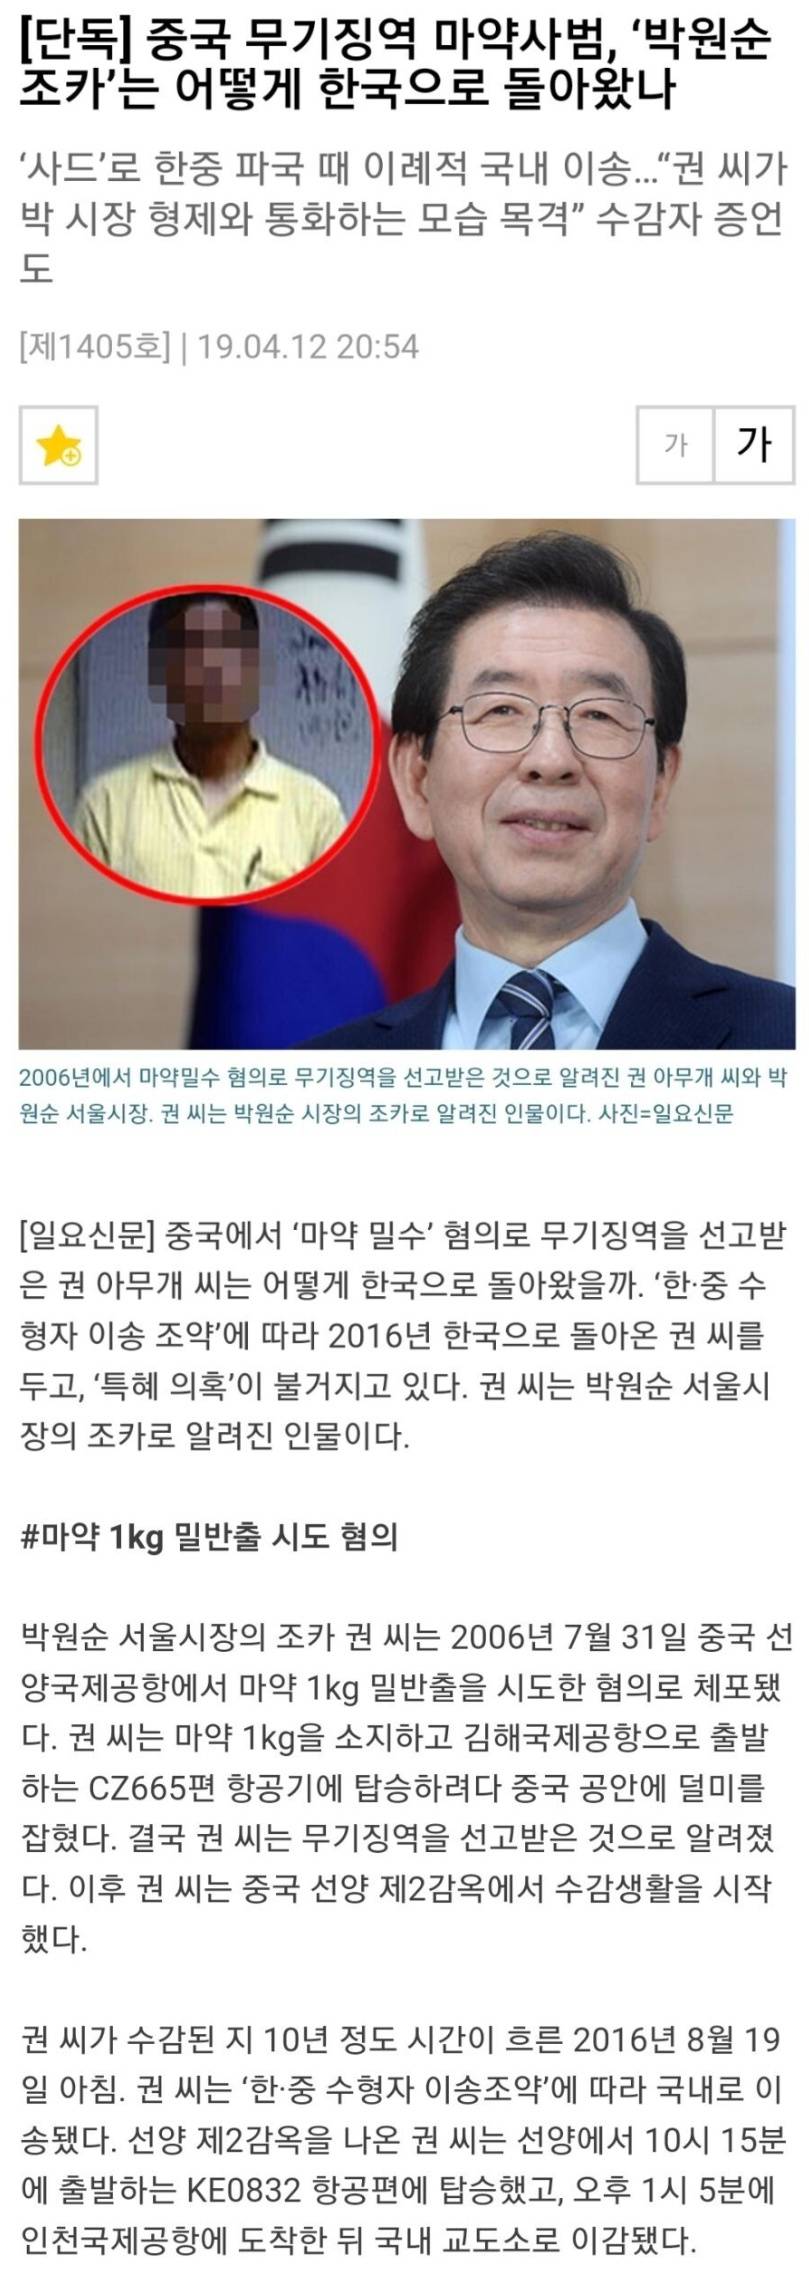 한국으로 돌아온 중국 무기징역 마약사범